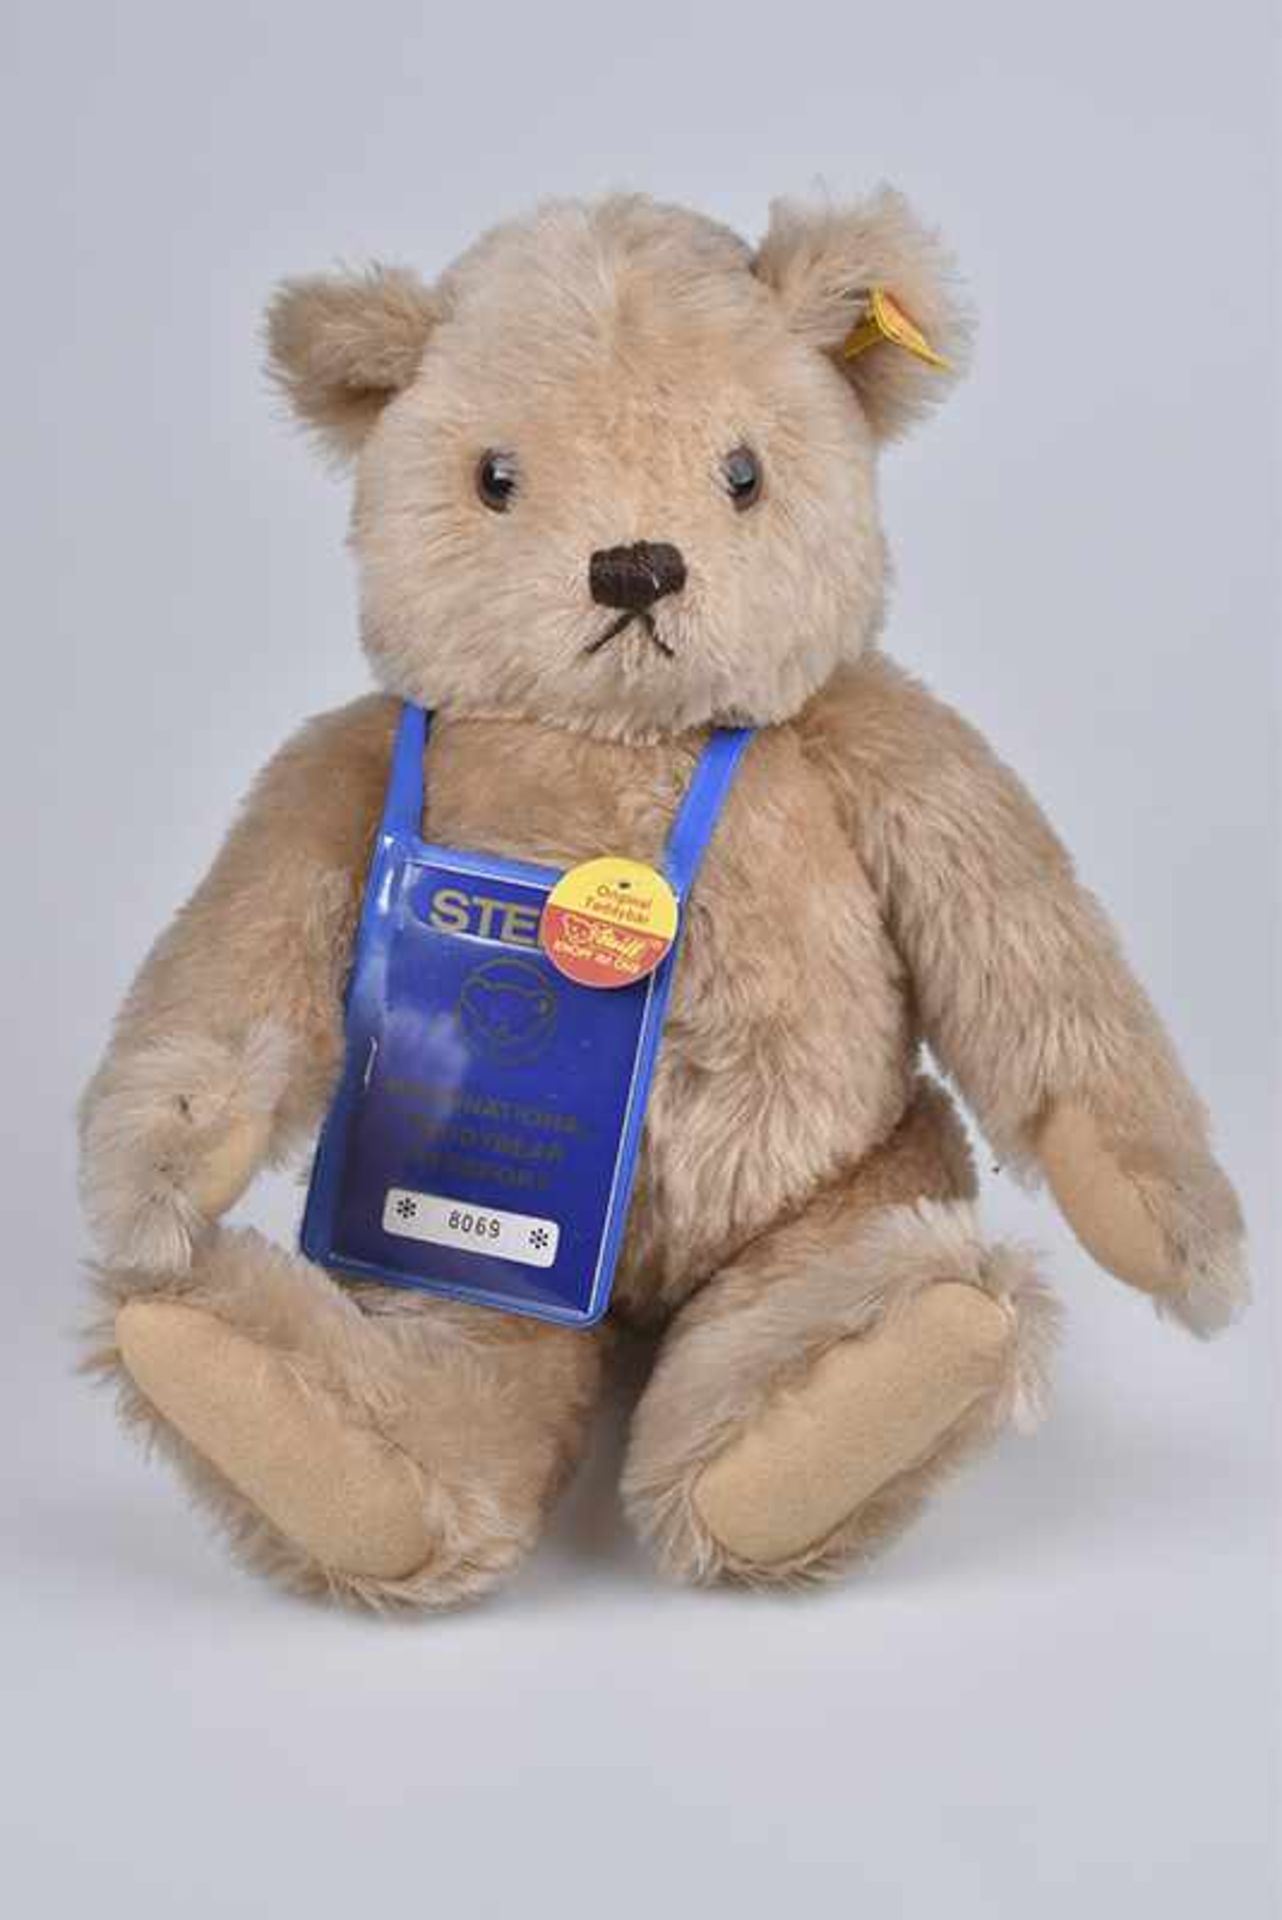 STEIFF Passport Teddybär, KFS, Nr. 0245/50, Mohair/ Webpelz, blond, 5-fach gegliedert, 40 cm,